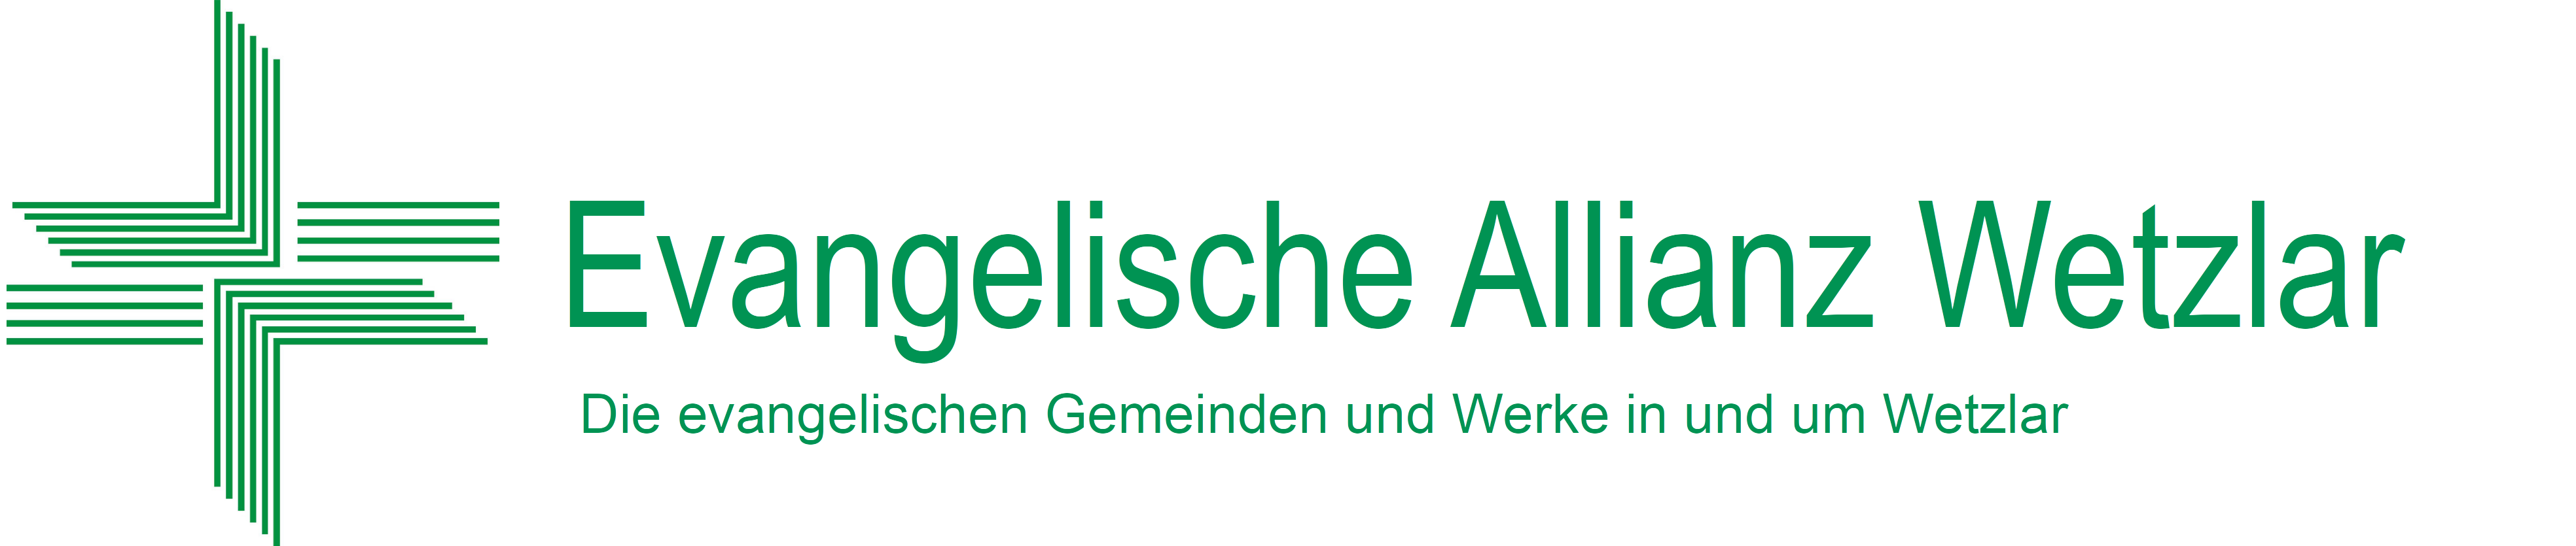 Evangelische Allianz Wetzlar